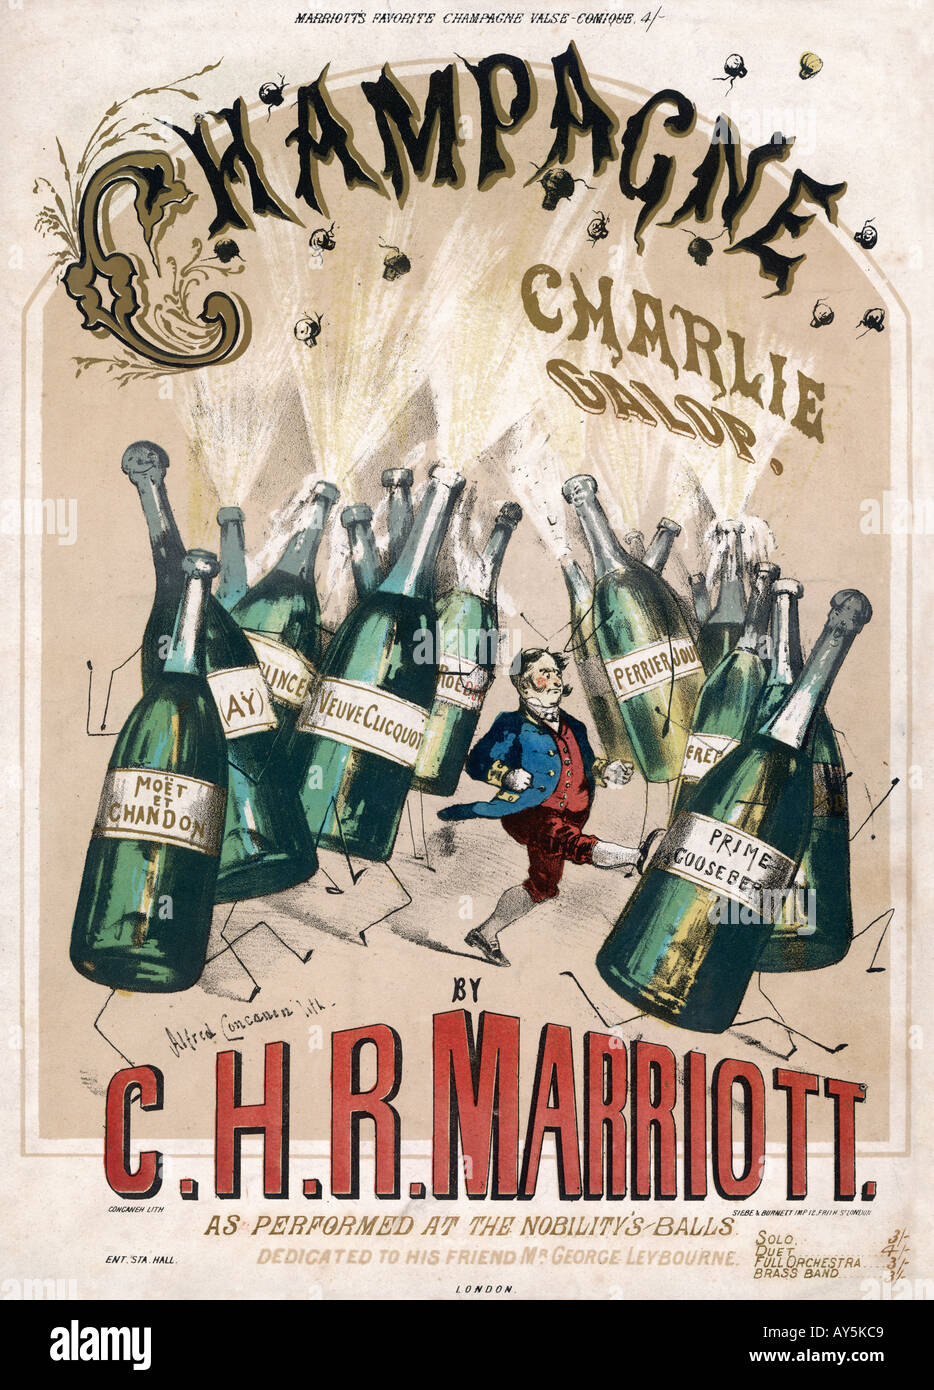 Champagne charlie immagini e fotografie stock ad alta risoluzione - Alamy